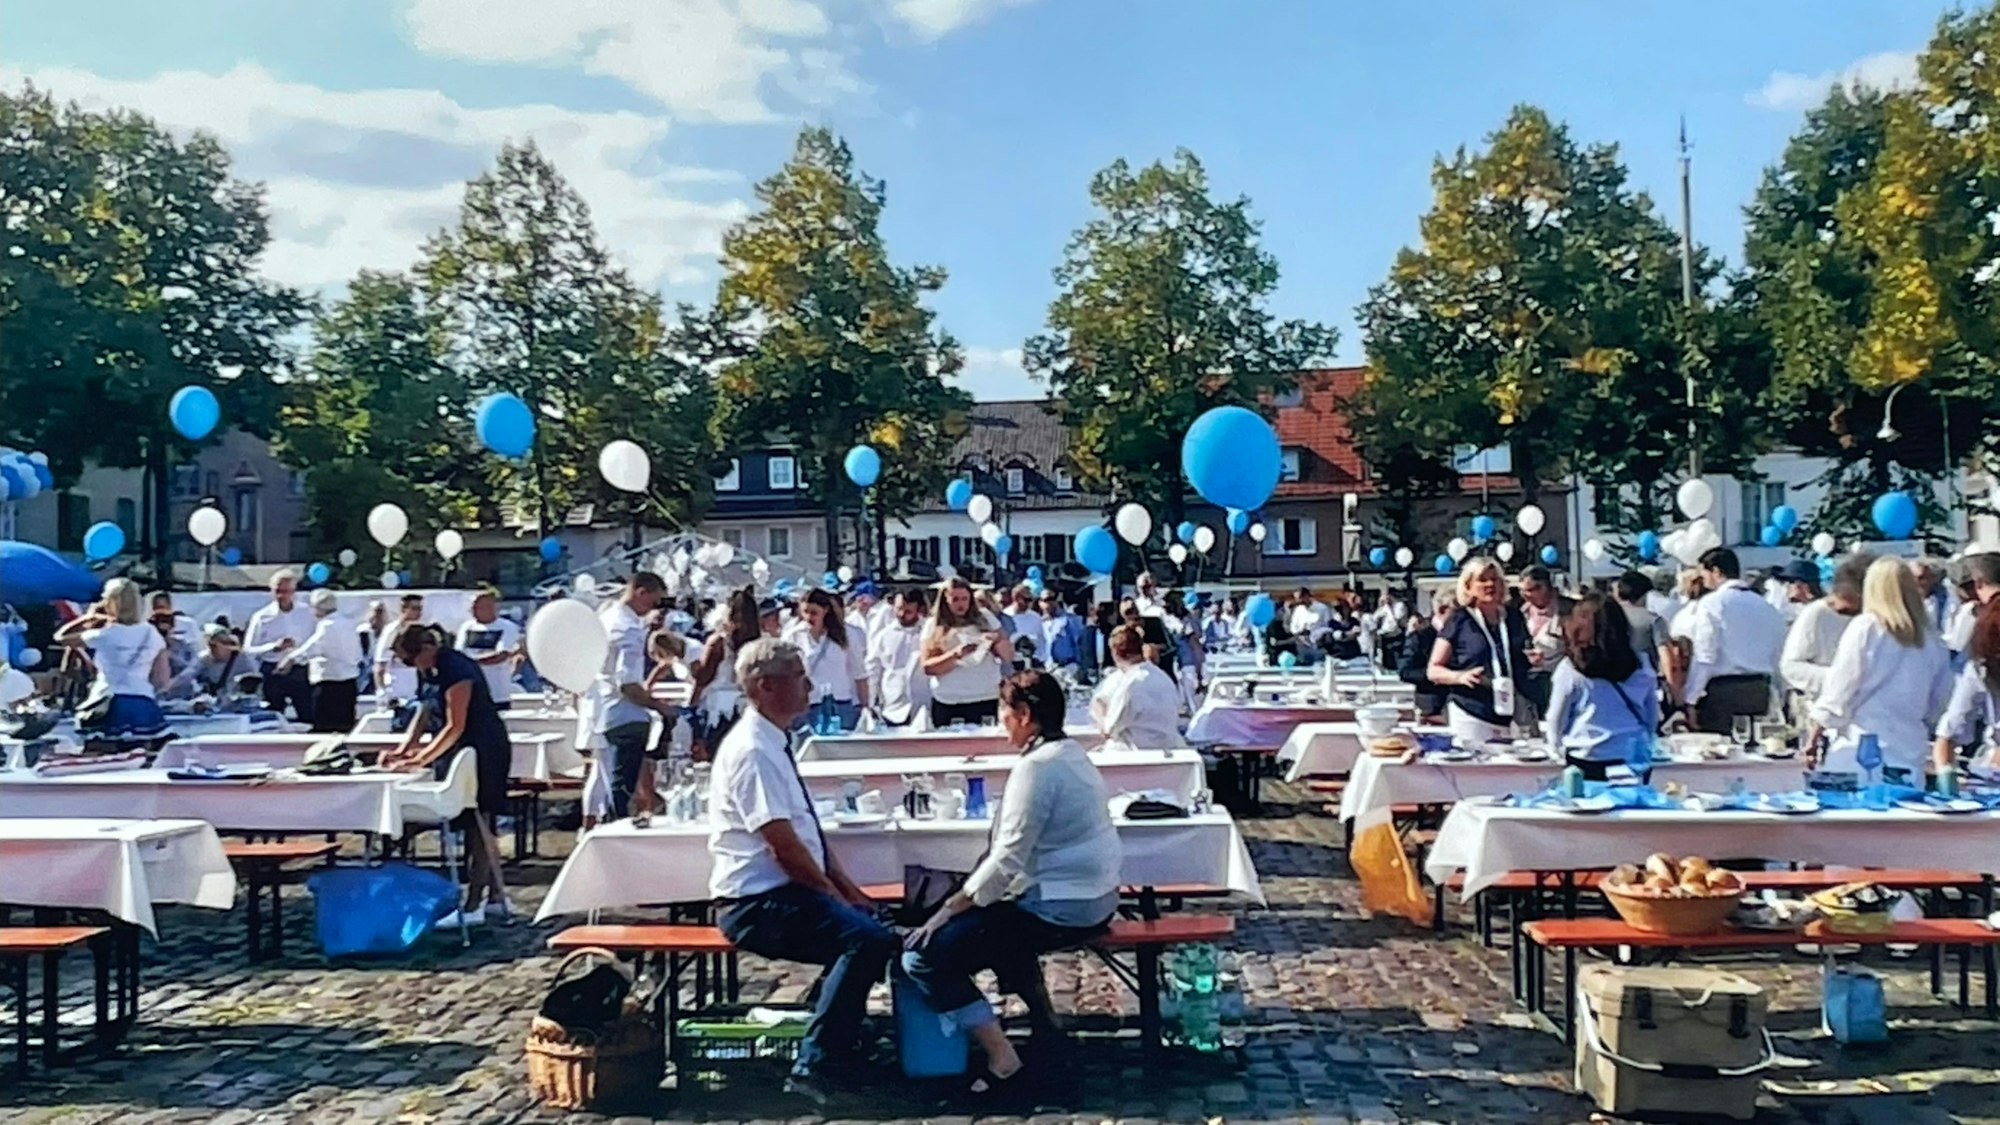 Viele geschmückte Biertische stehen auf einem Marktplatz, Menschen stehen und sitzen um sie herum. Luftballons in Blau und Weiß sind zu sehen.